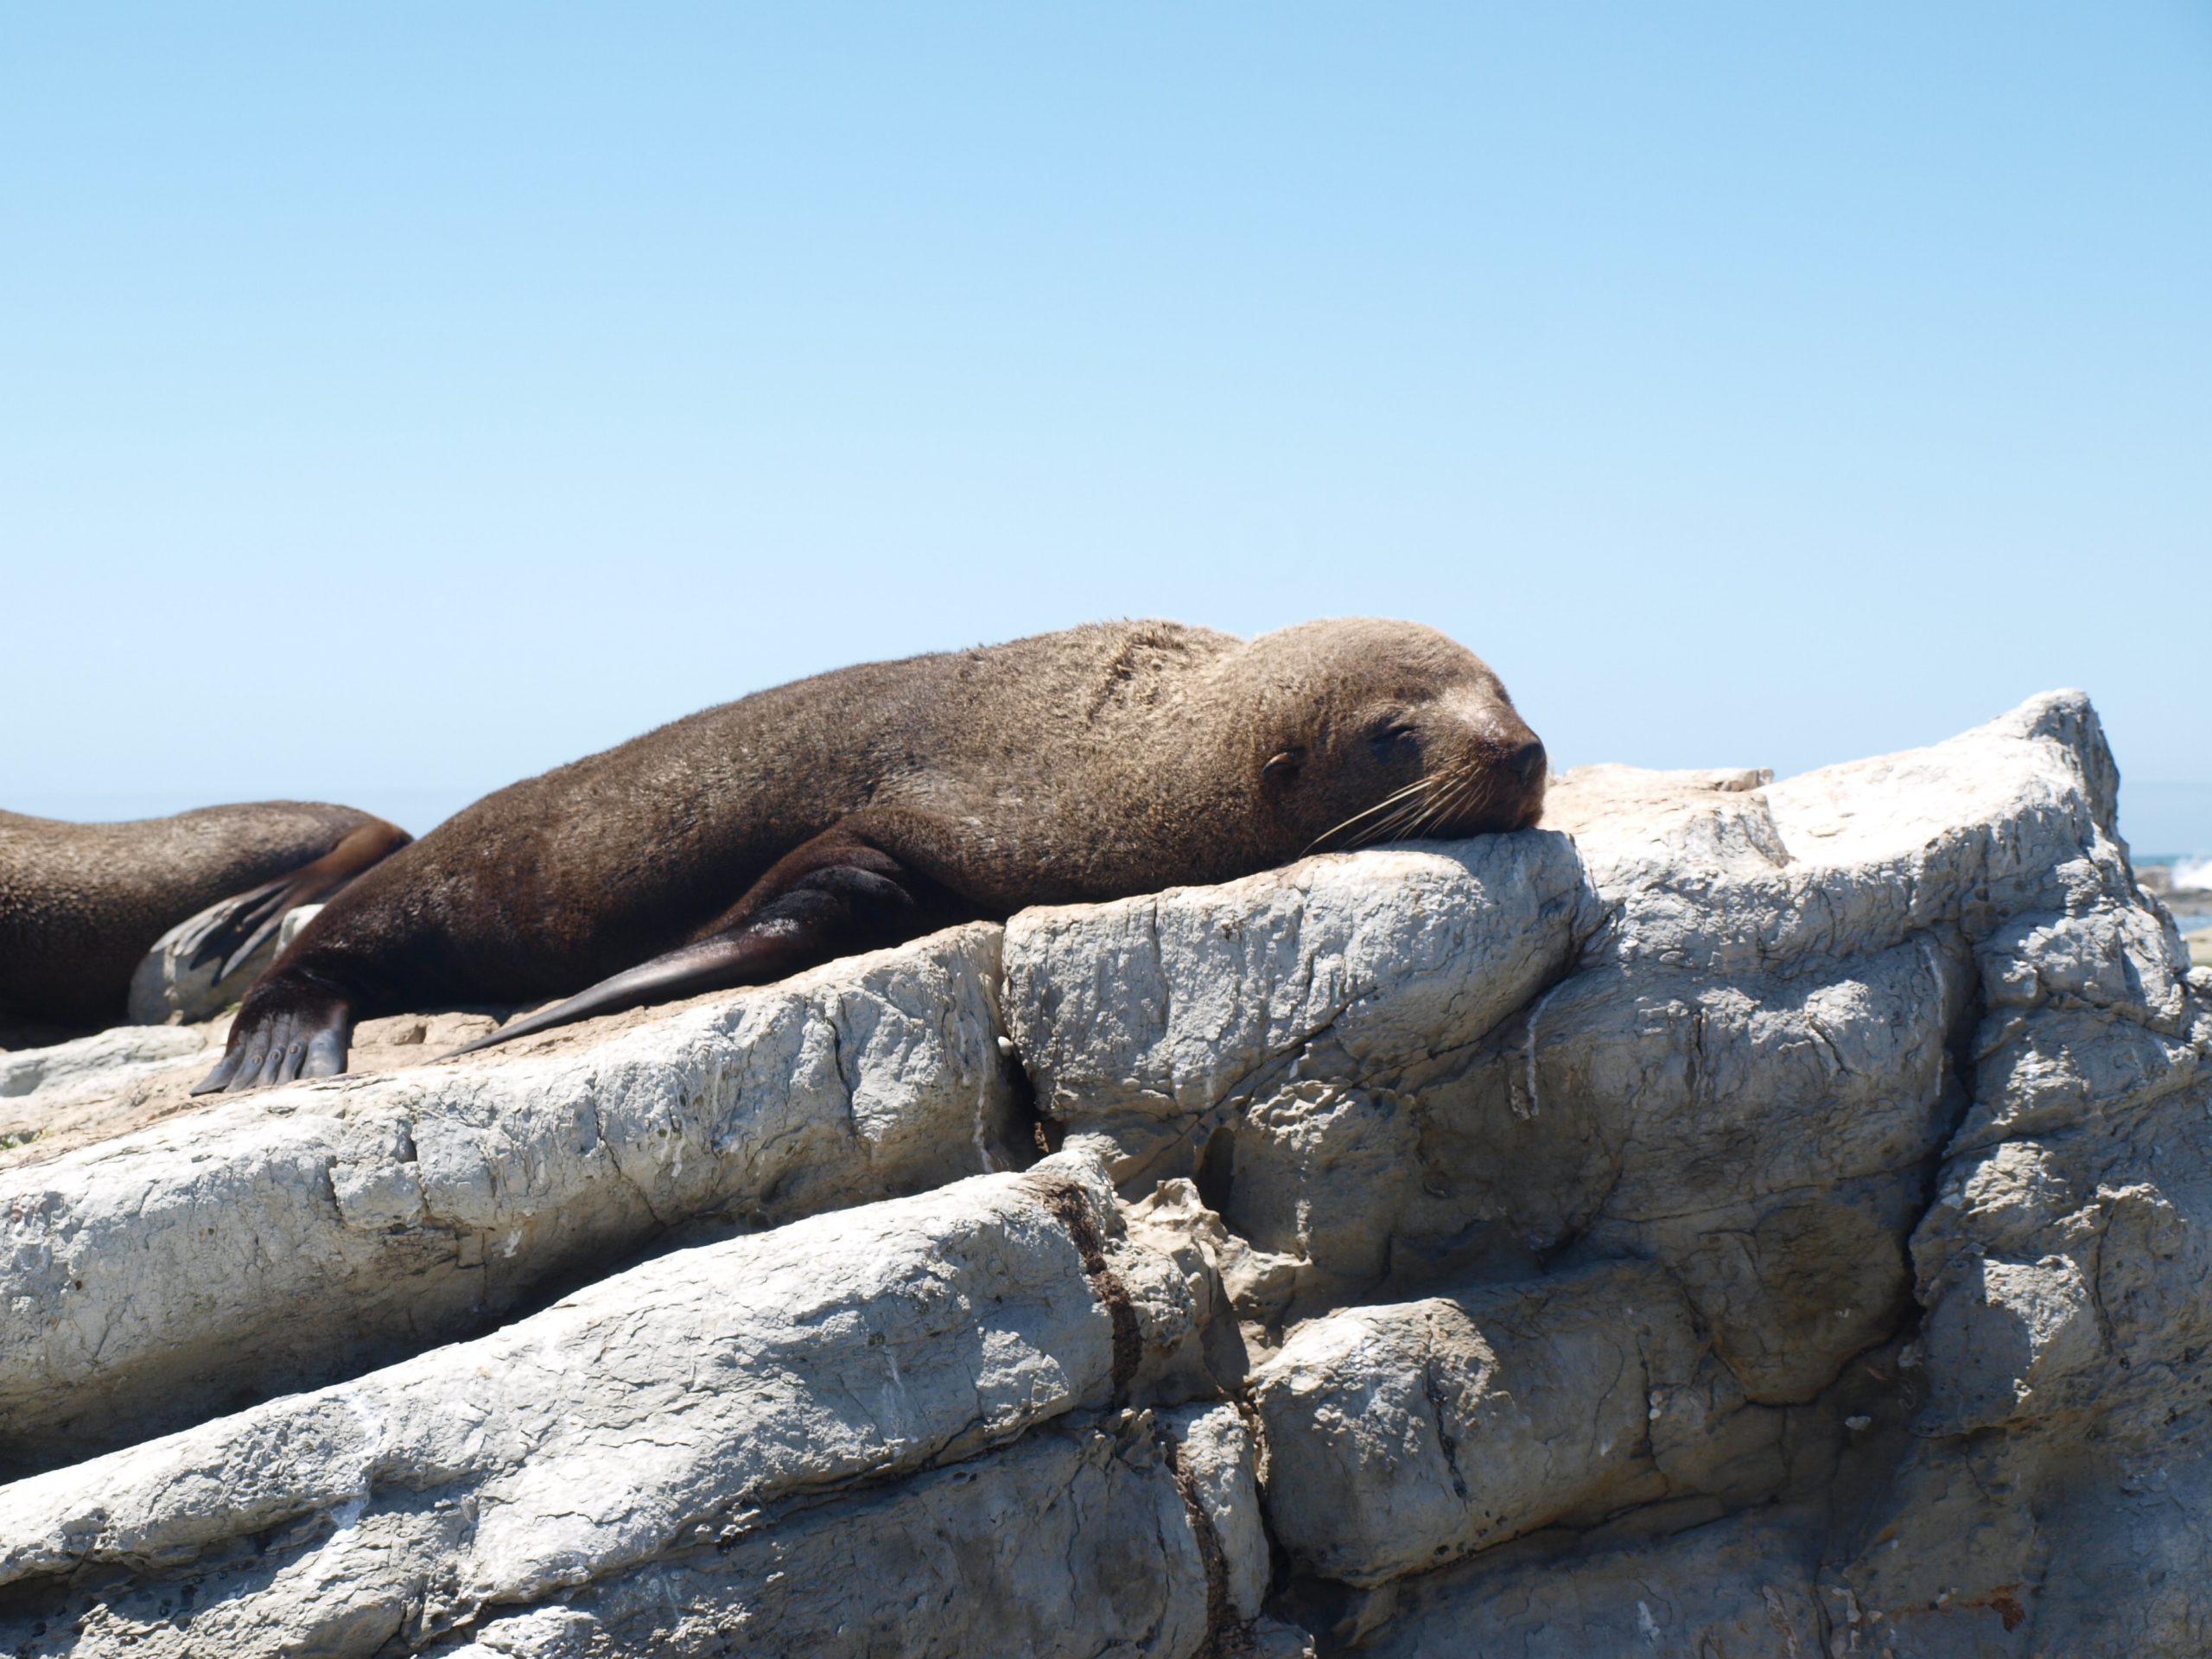 A fur seal sunbathing on top of grey rocks.